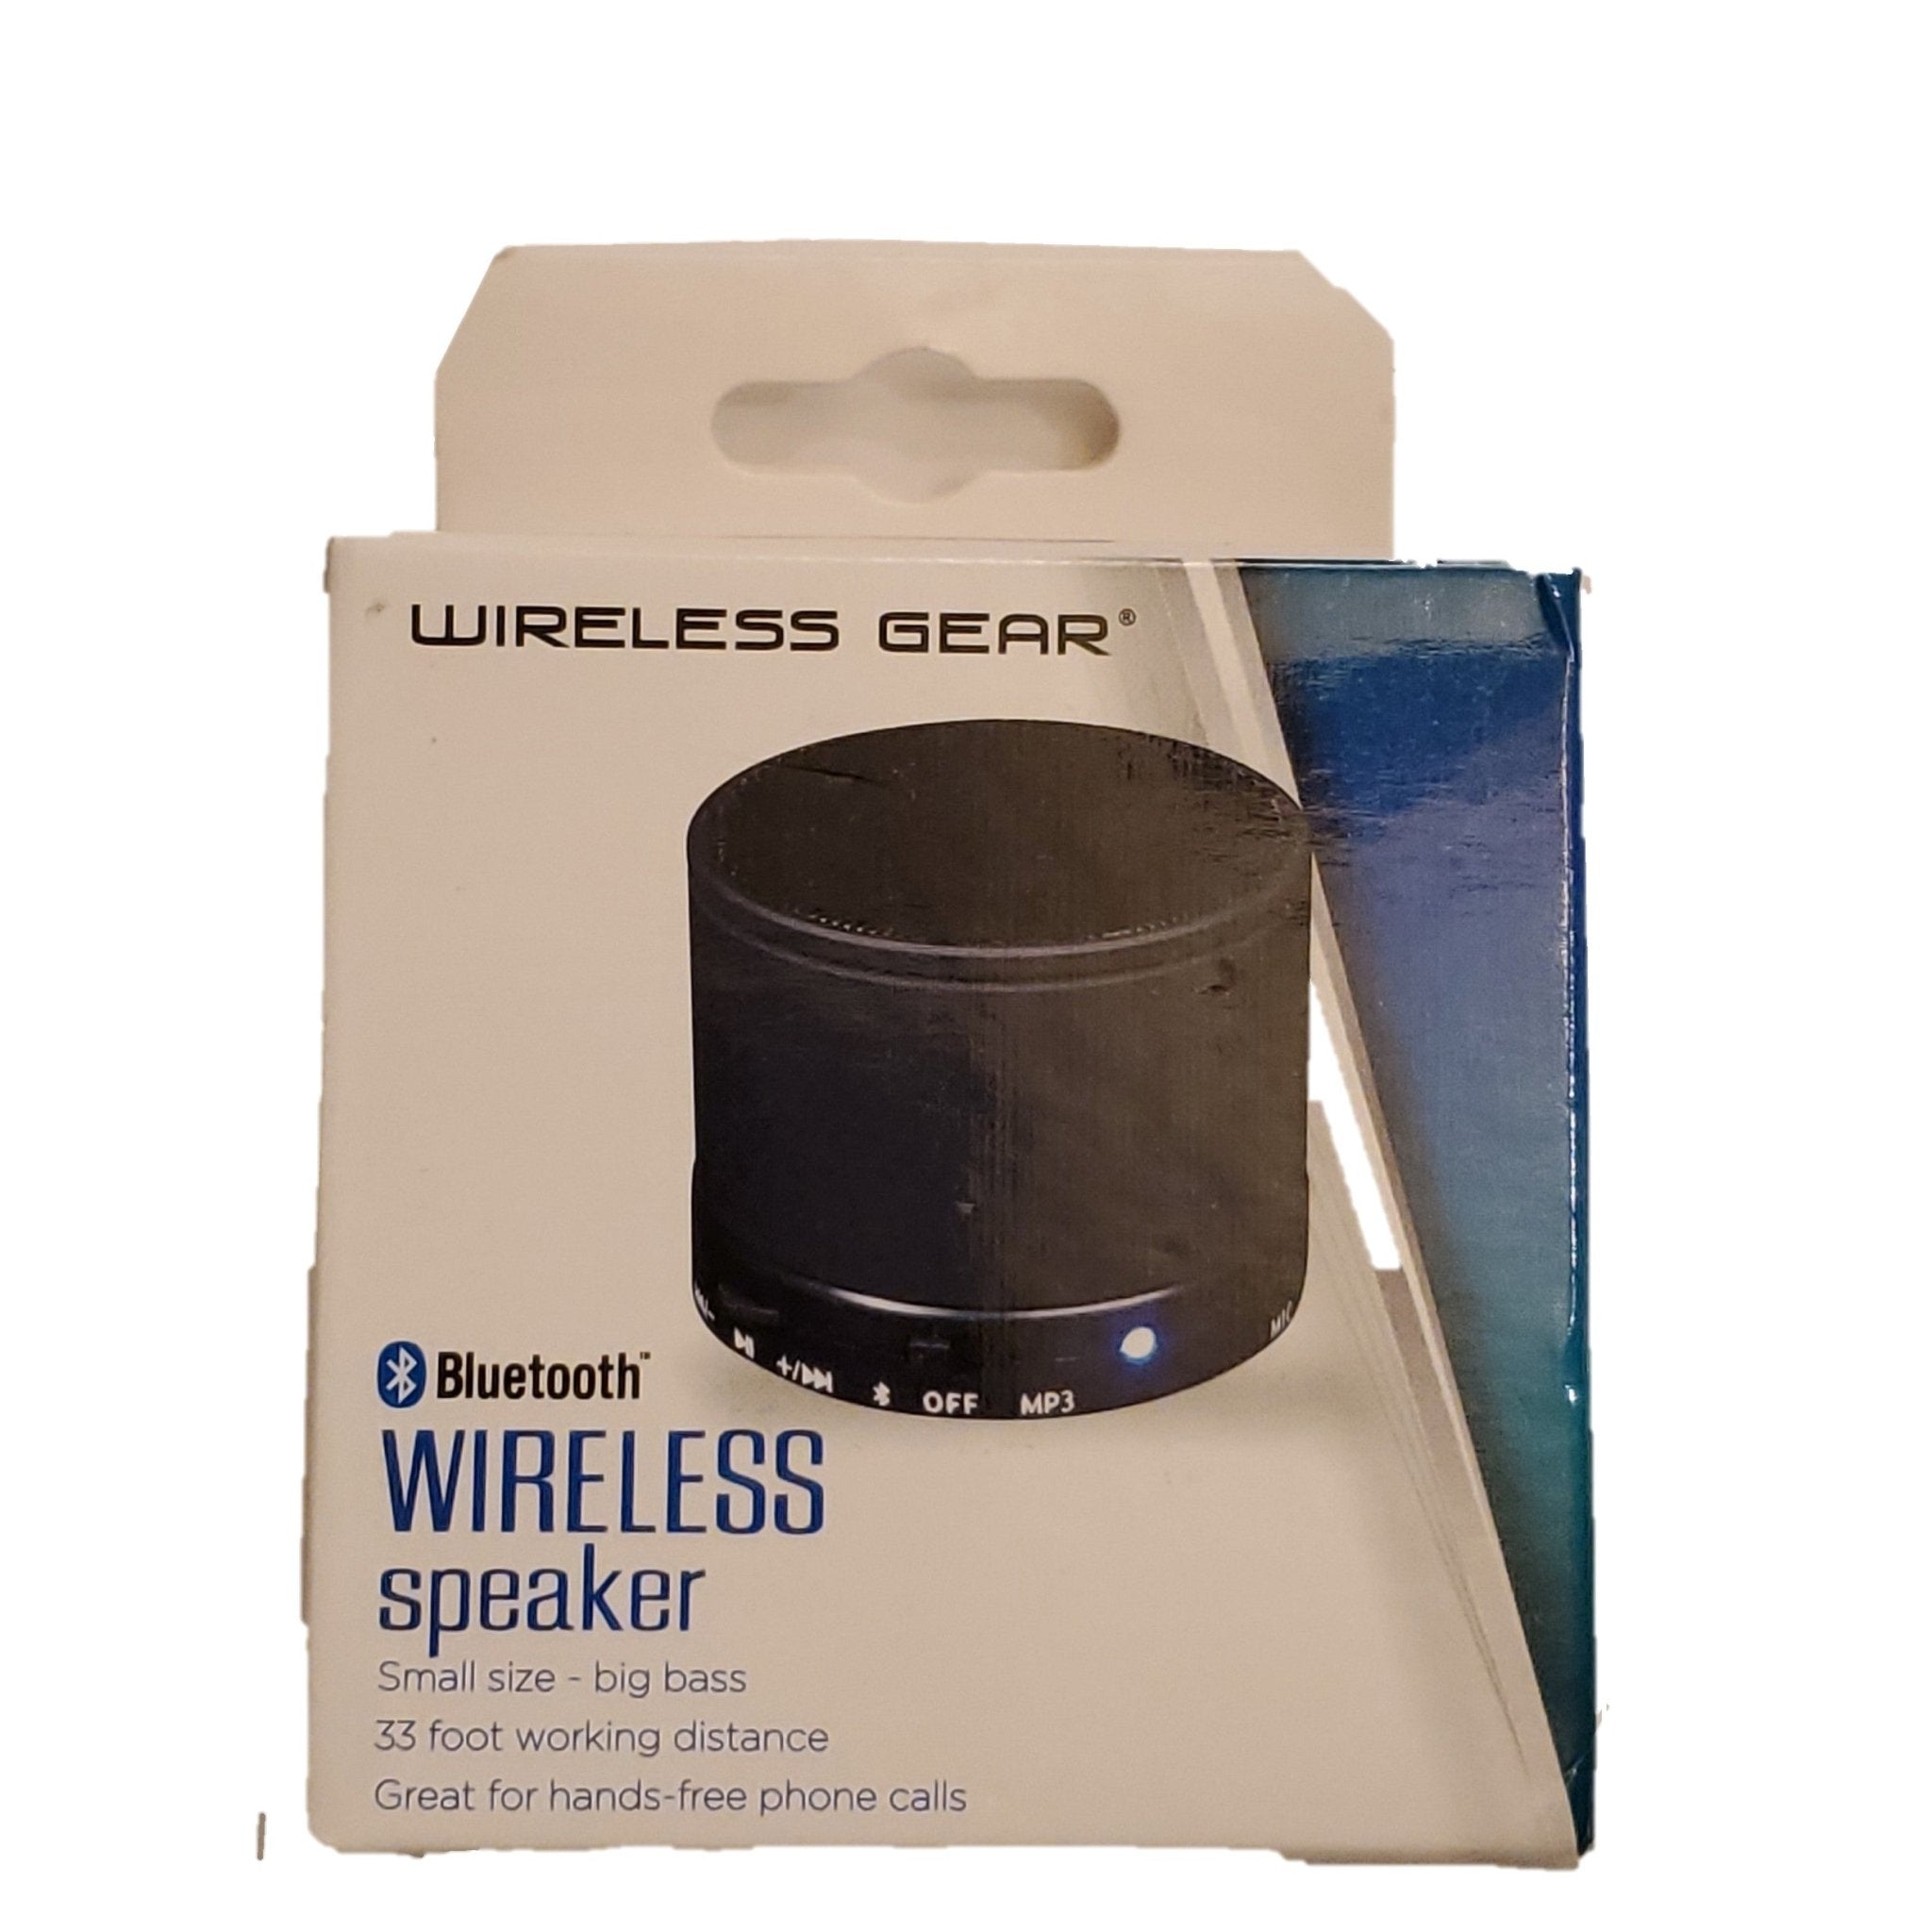 Wireless Gear Mini Bluetooth Speaker - Bargainwizz